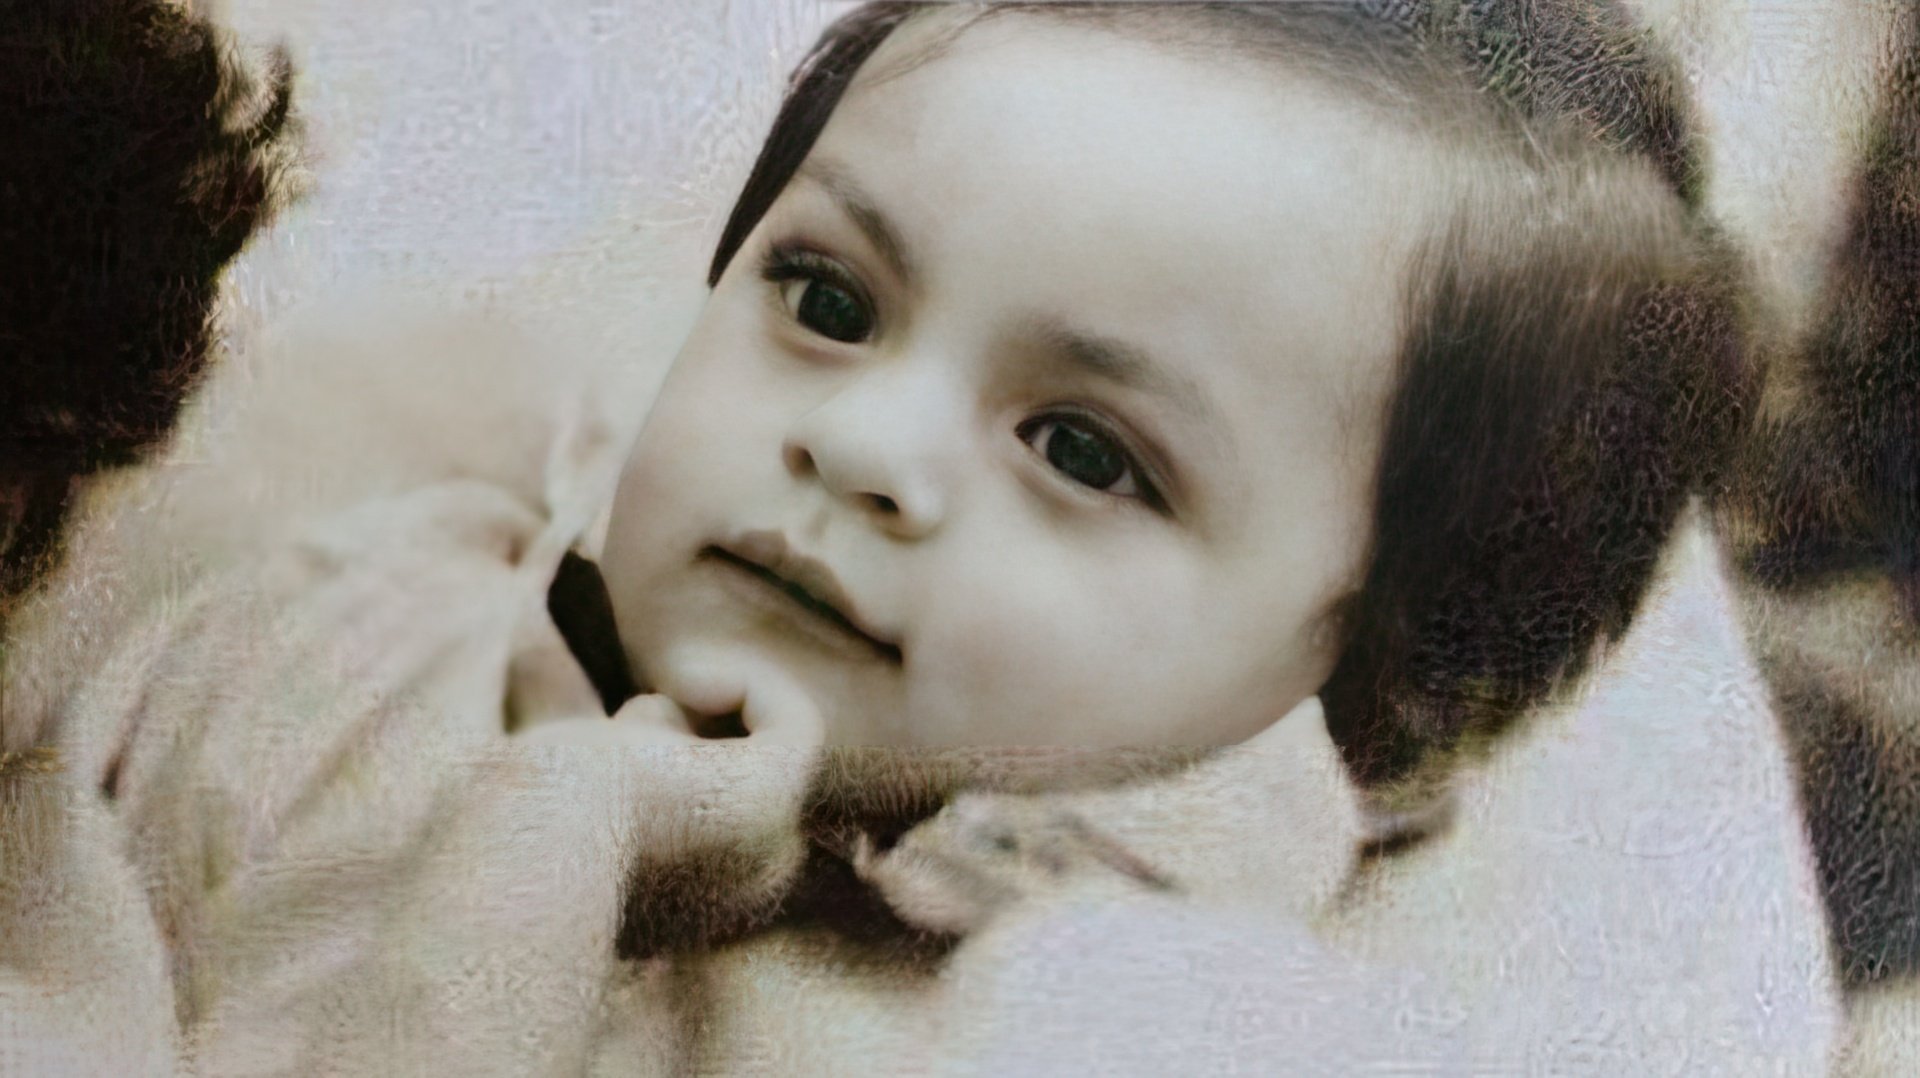 Infant Shah Rukh Khan